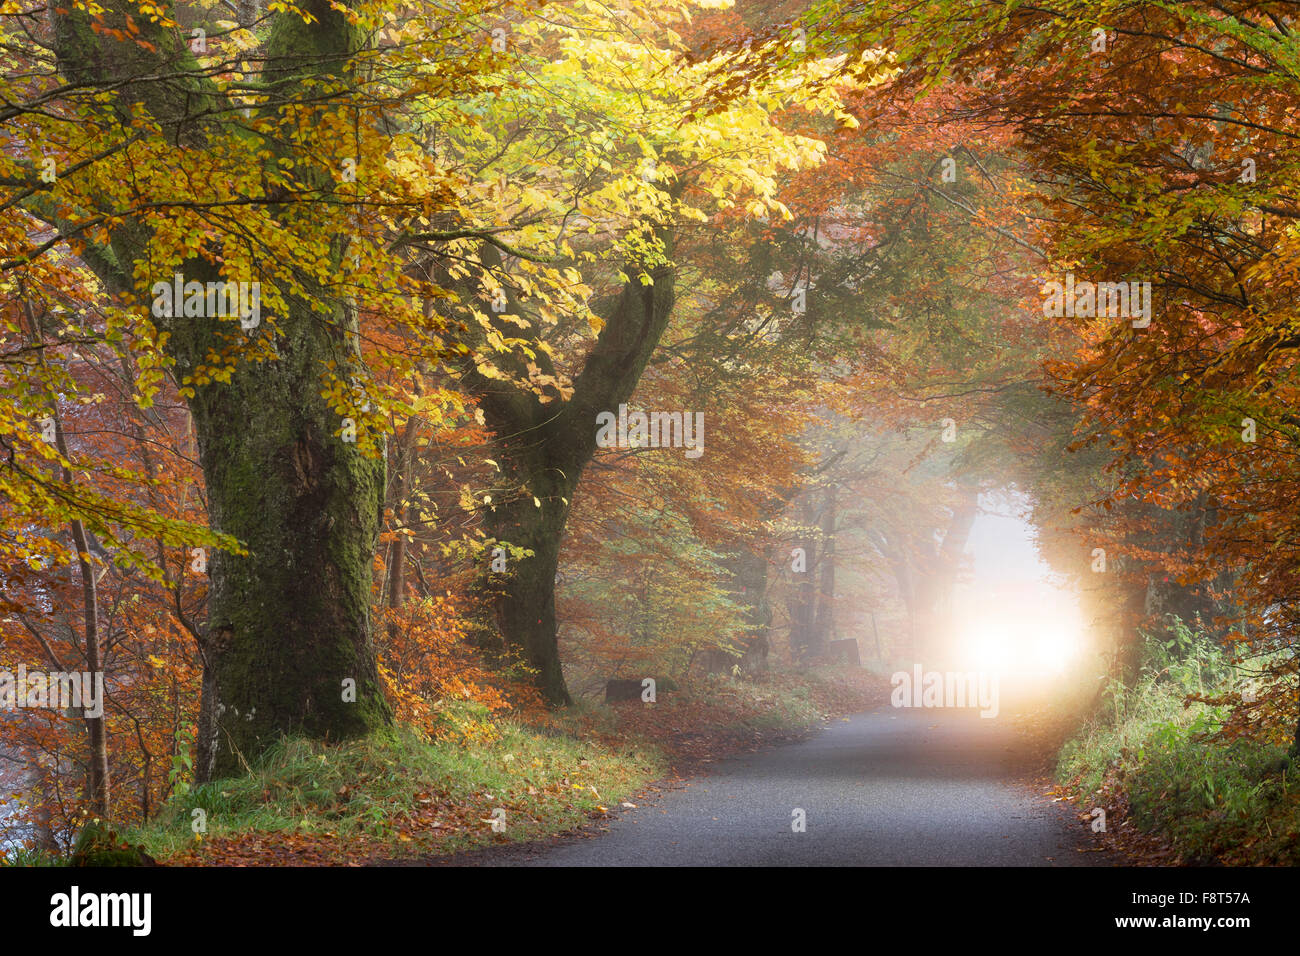 Allée d'arbres en automne brouillard et un véhicule sur route dans la région de Glen Lyon, Perth et Kinross, Scotland, UK Banque D'Images